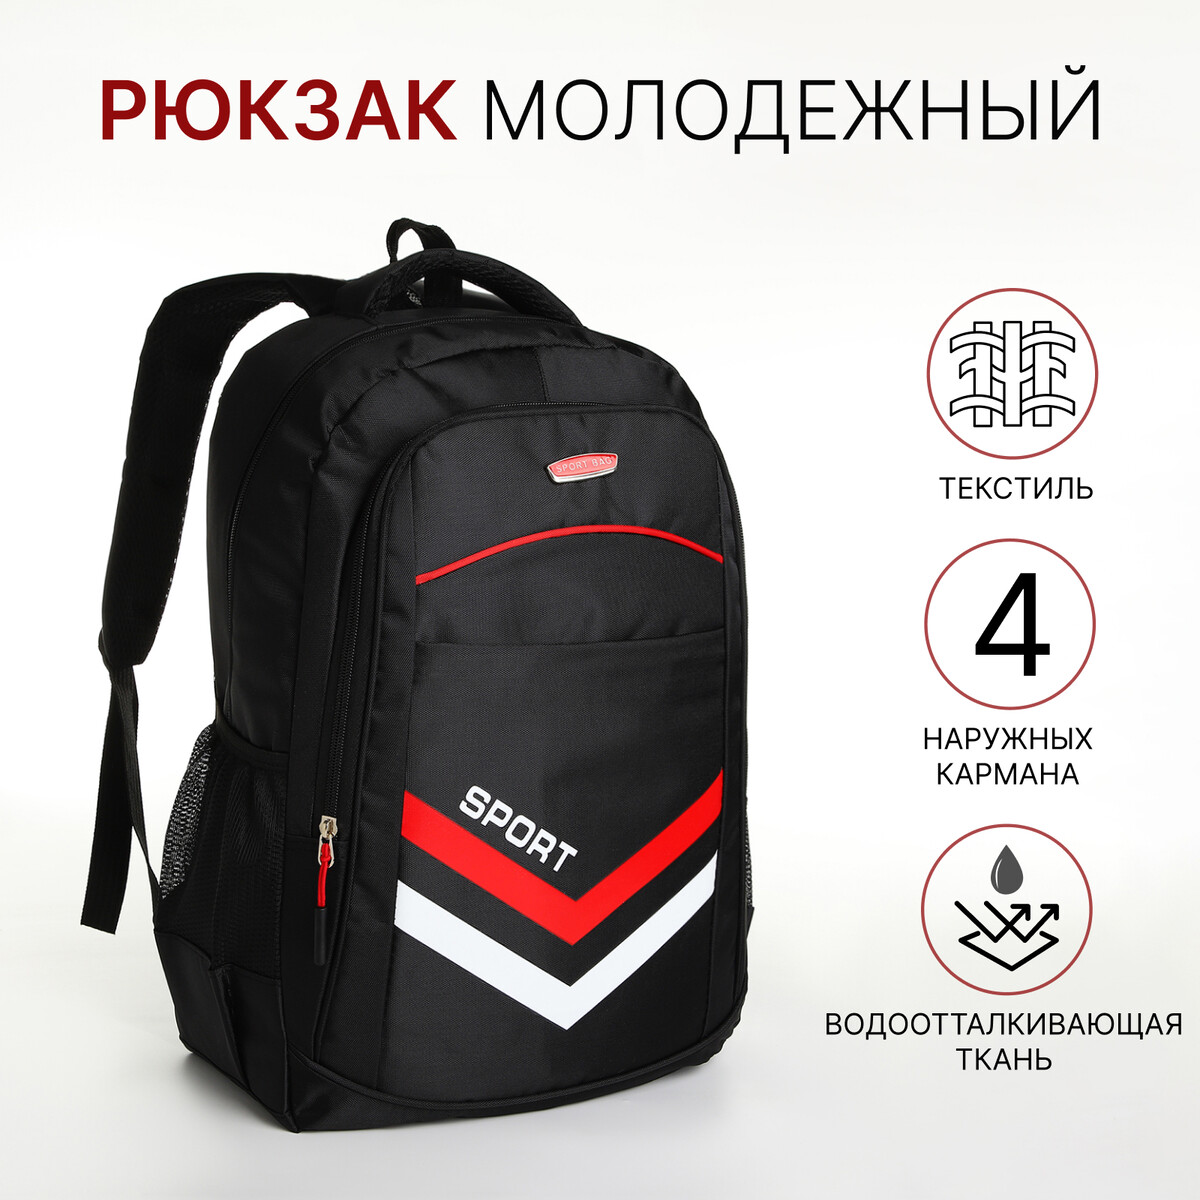 Рюкзак молодежный на молнии, 4 кармана, цвет черный/красный рюкзак wenger next ryde 611991 16 красный антрацит 26 л